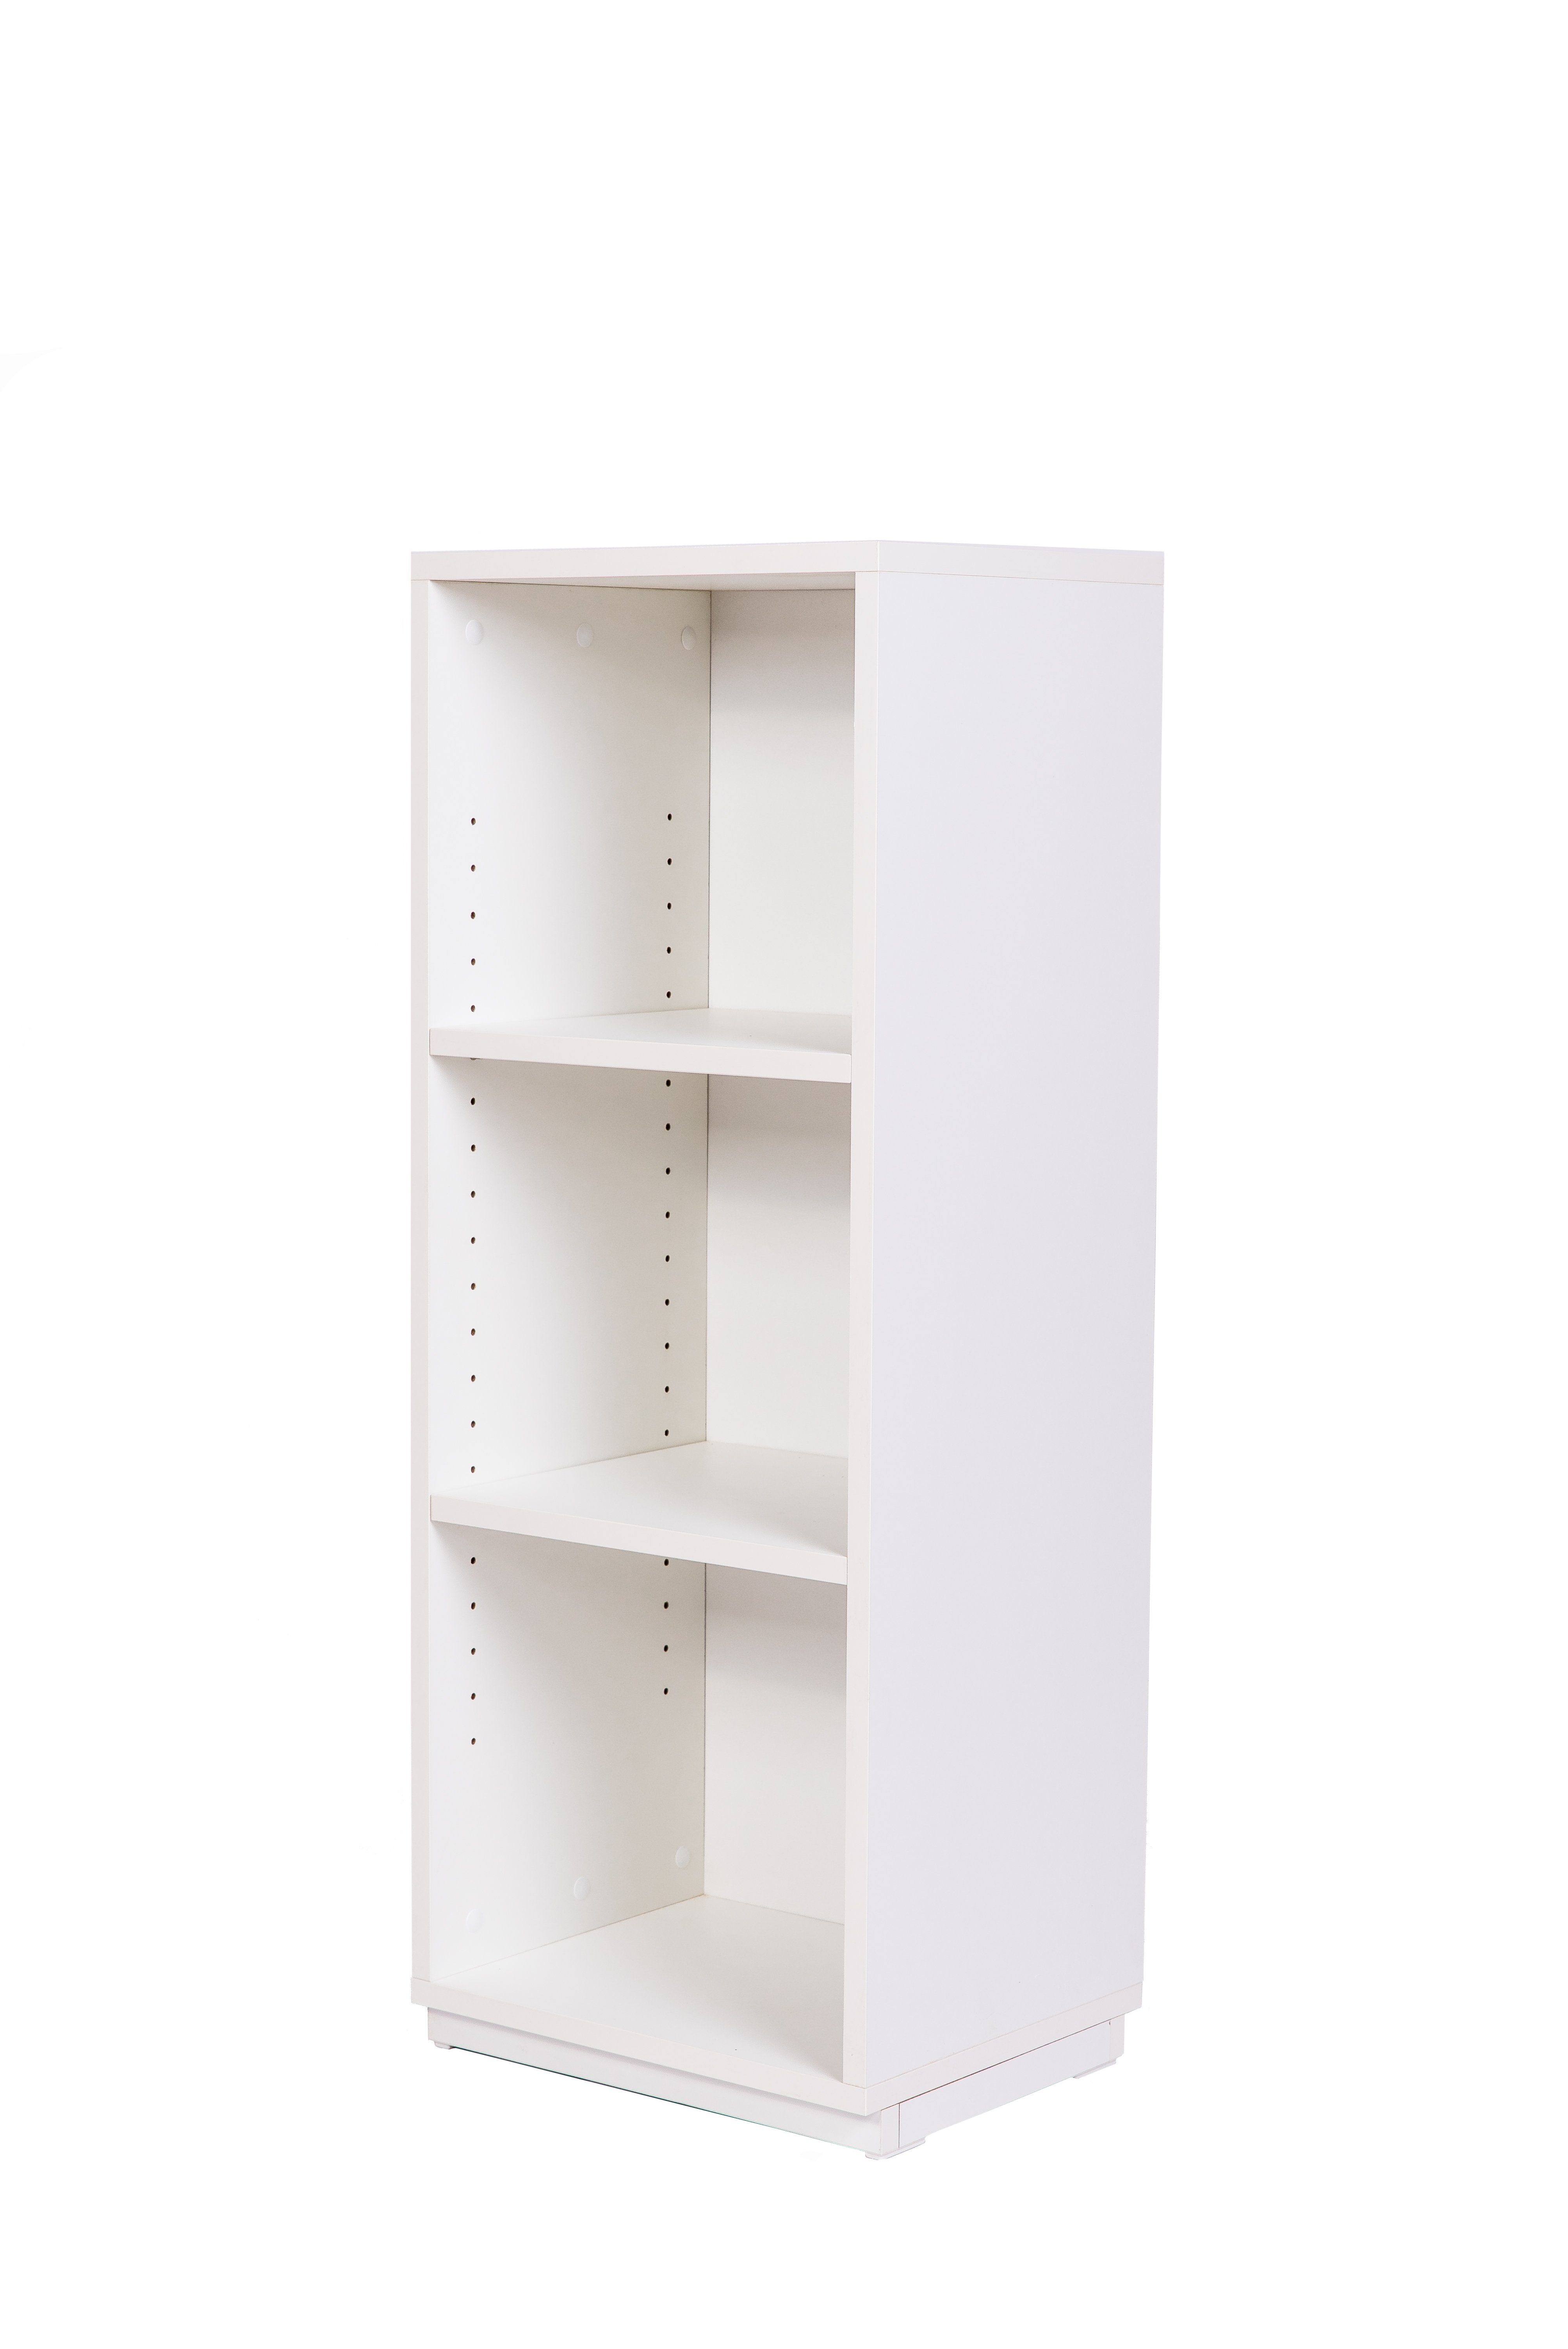 kundler cm Premiumdekor 40, home Wohnzimmerregal B individuell T32, H100 Weiß kombinierbar Bücherregal oder Regal